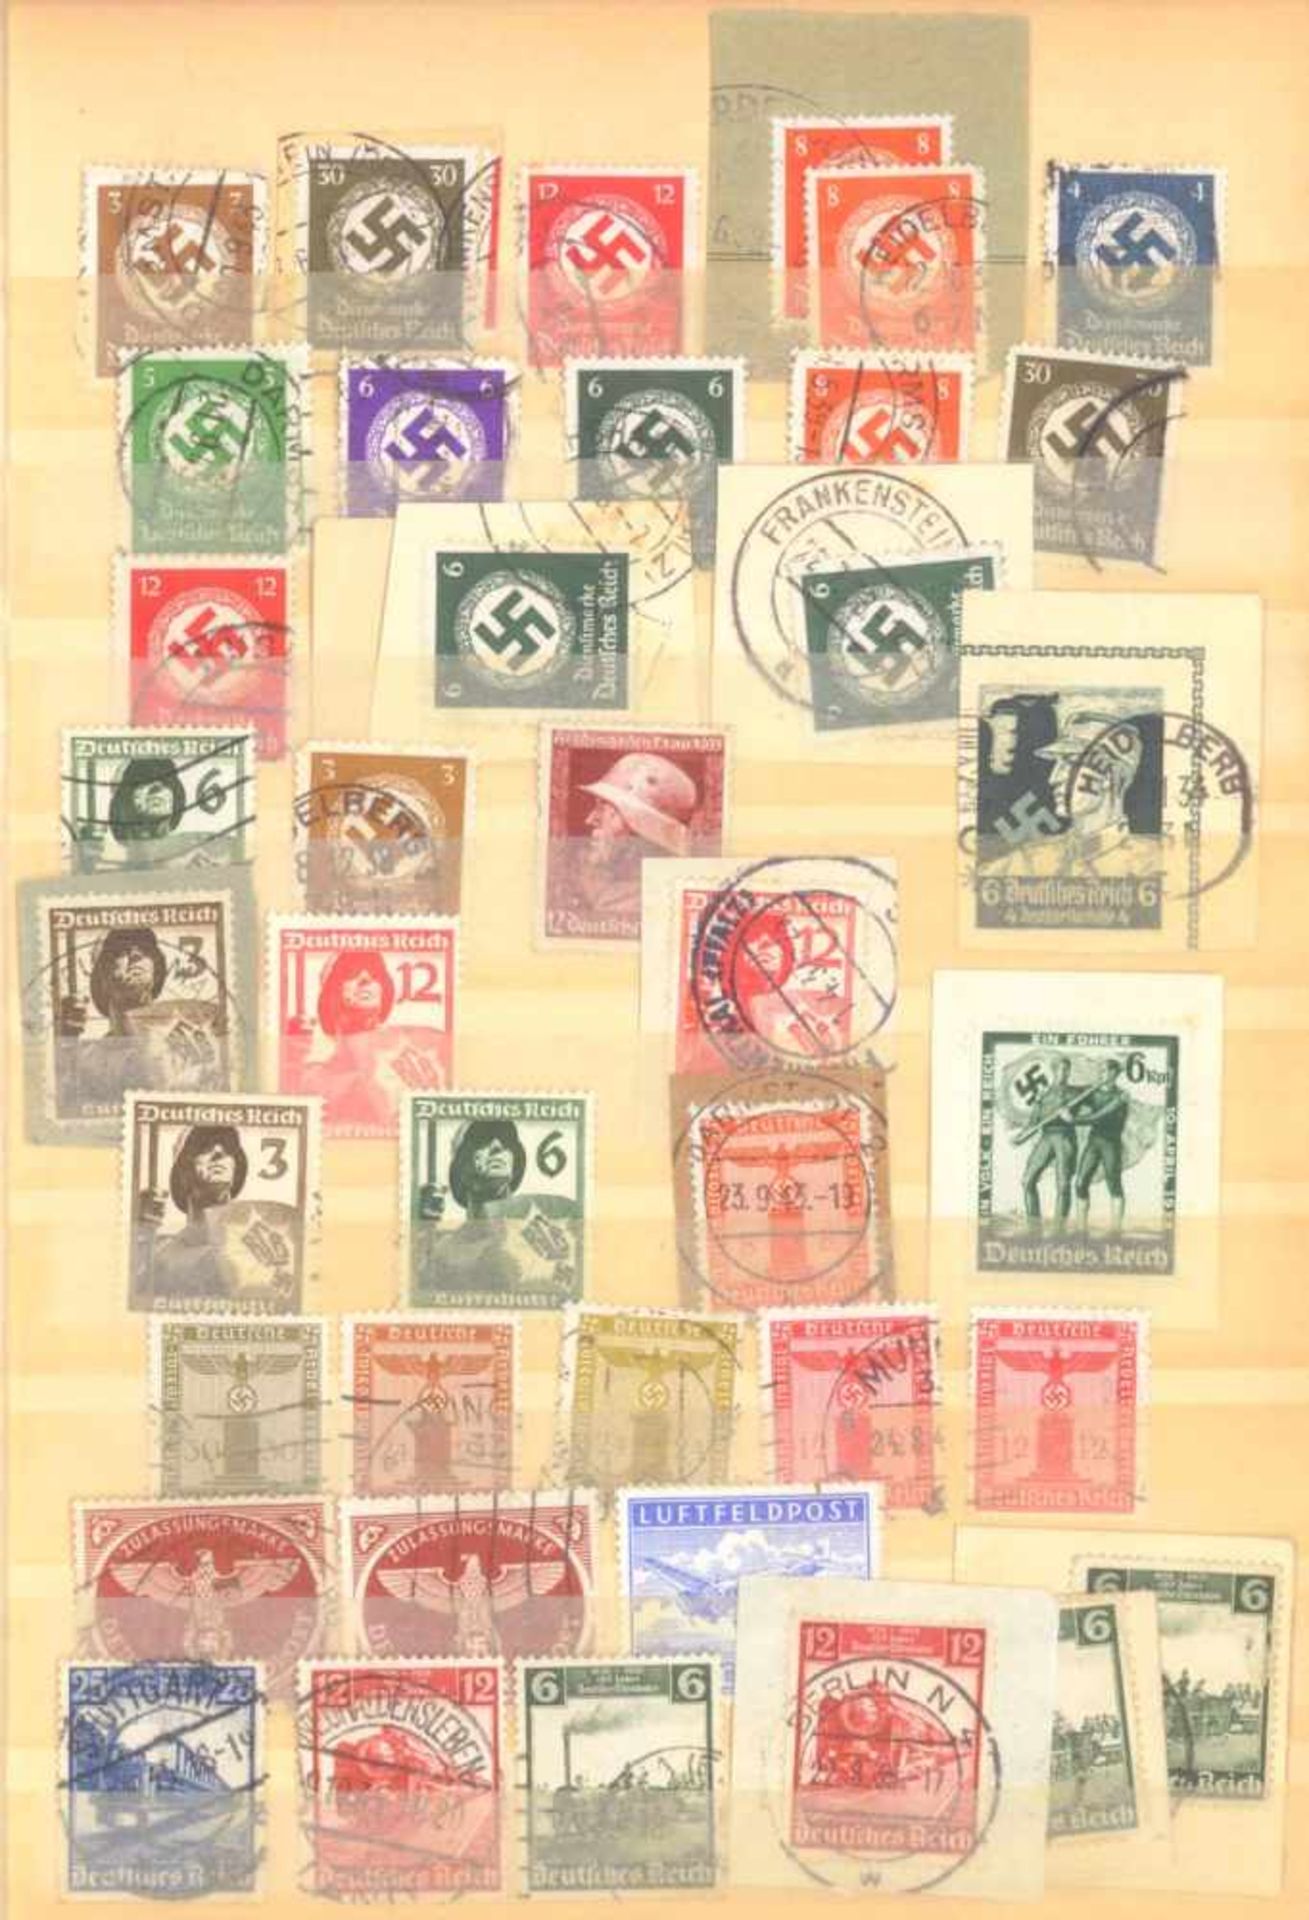 FRANKENTHALER NACHLASSuriger Nachlass mit Briefmarken und Belegen. Dabei DeutschesReich, altes - Image 19 of 46